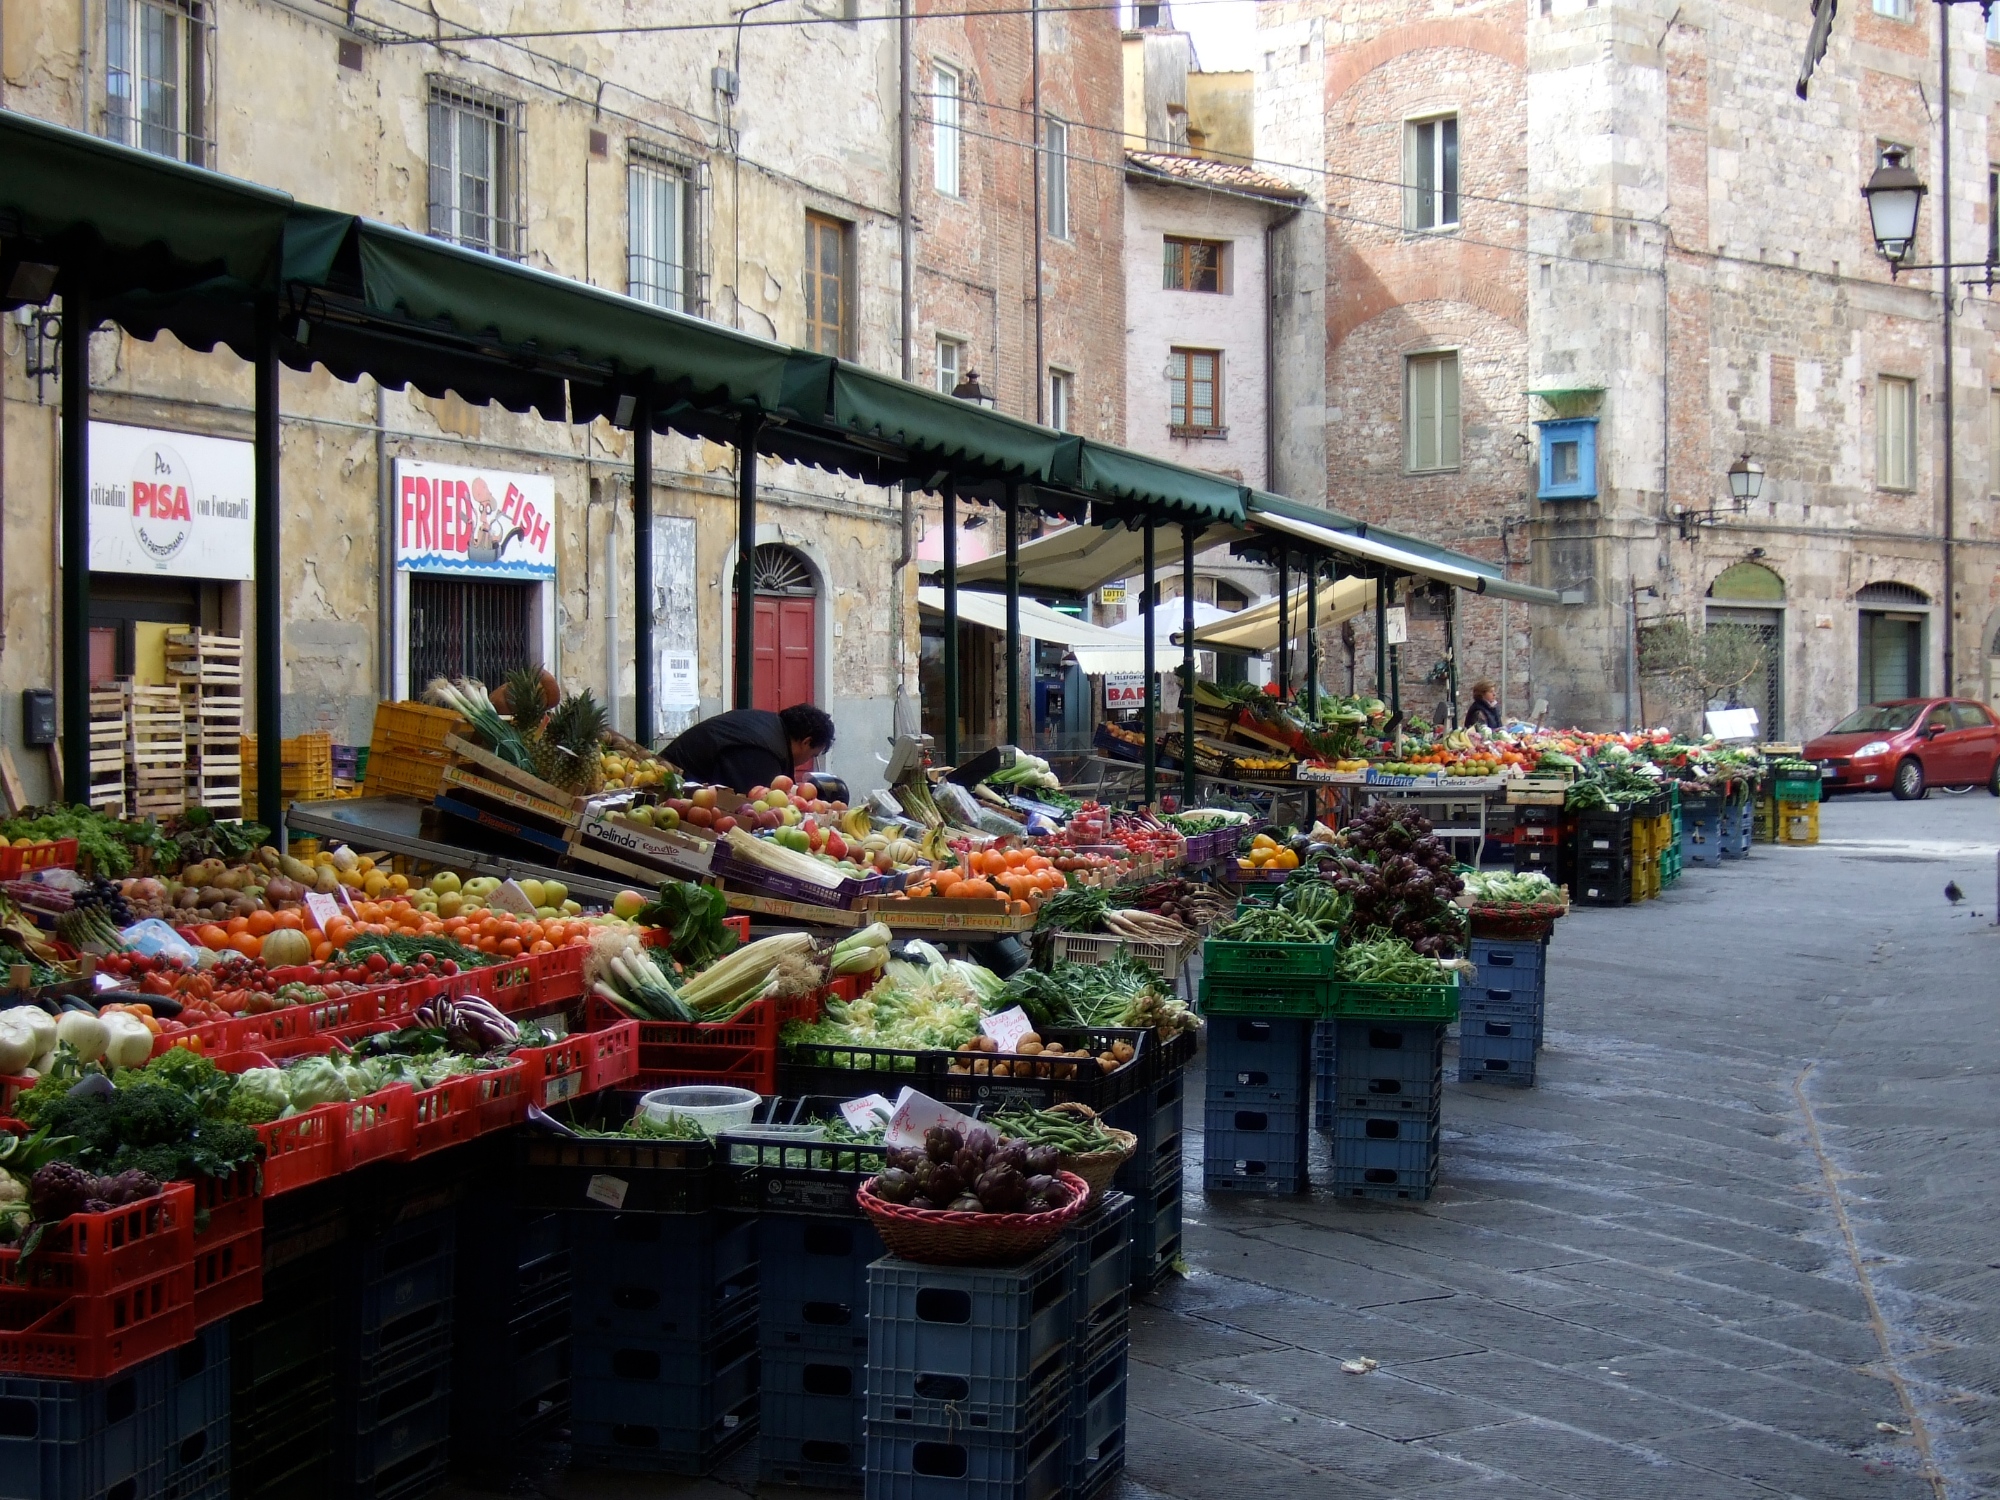 The market in Piazza delle Vettovaglie in Pisa